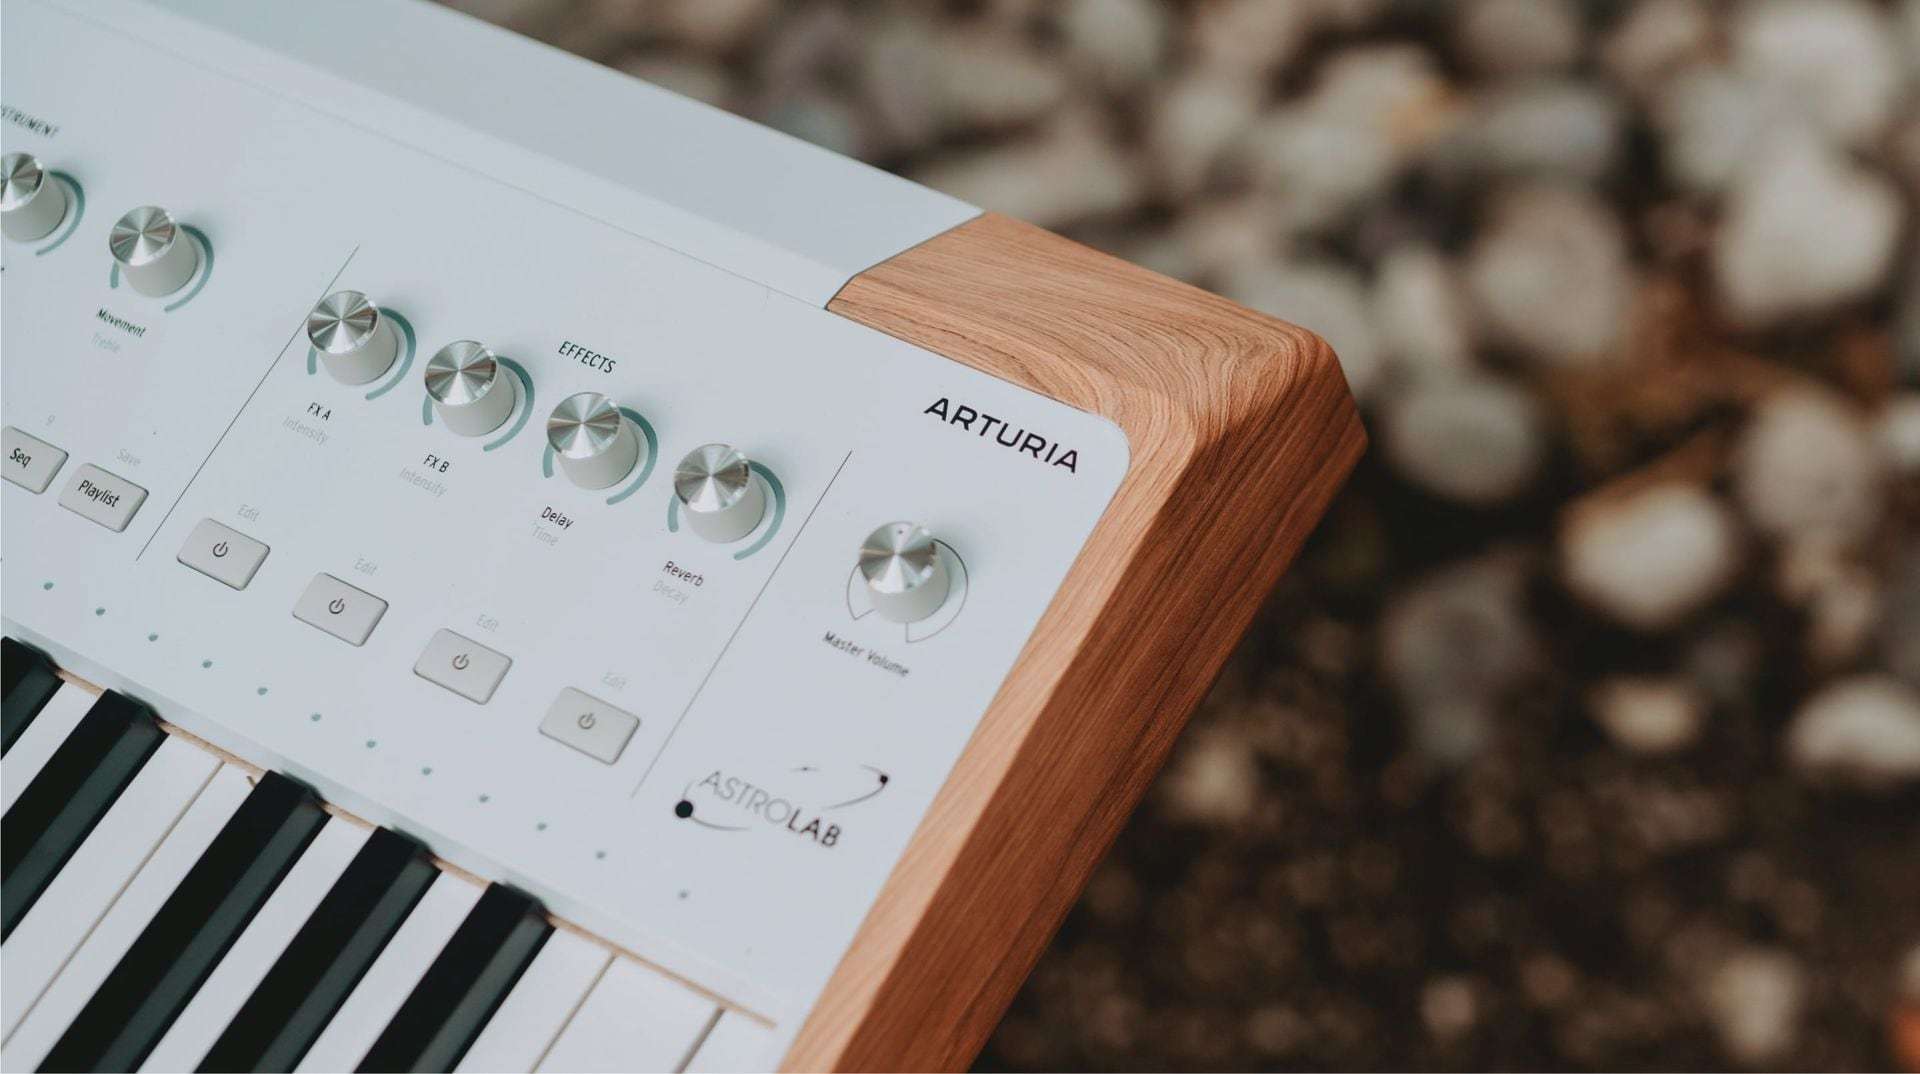 Arturia AstroLab: teclado workstation de última generación con más de 1300 sonidos incorporados